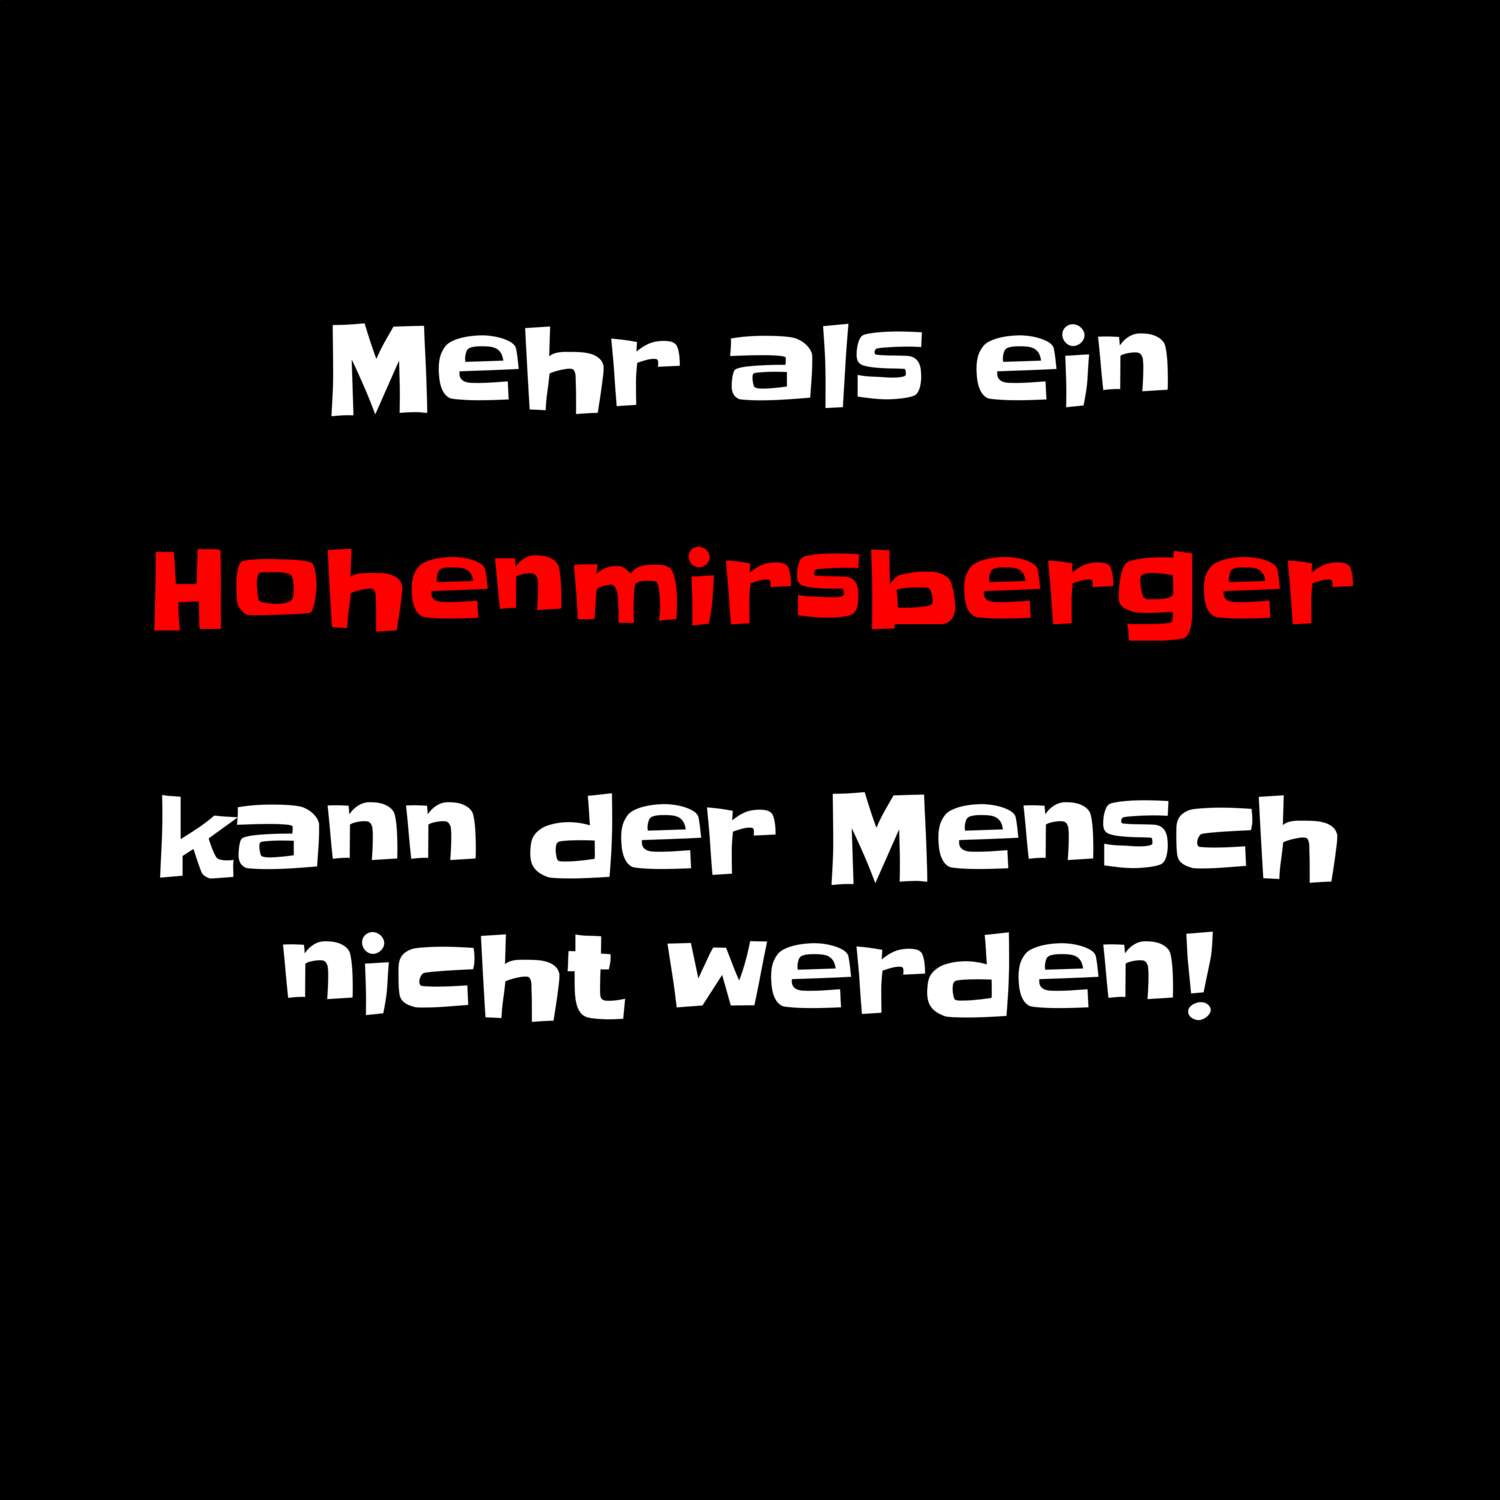 Hohenmirsberg T-Shirt »Mehr als ein«